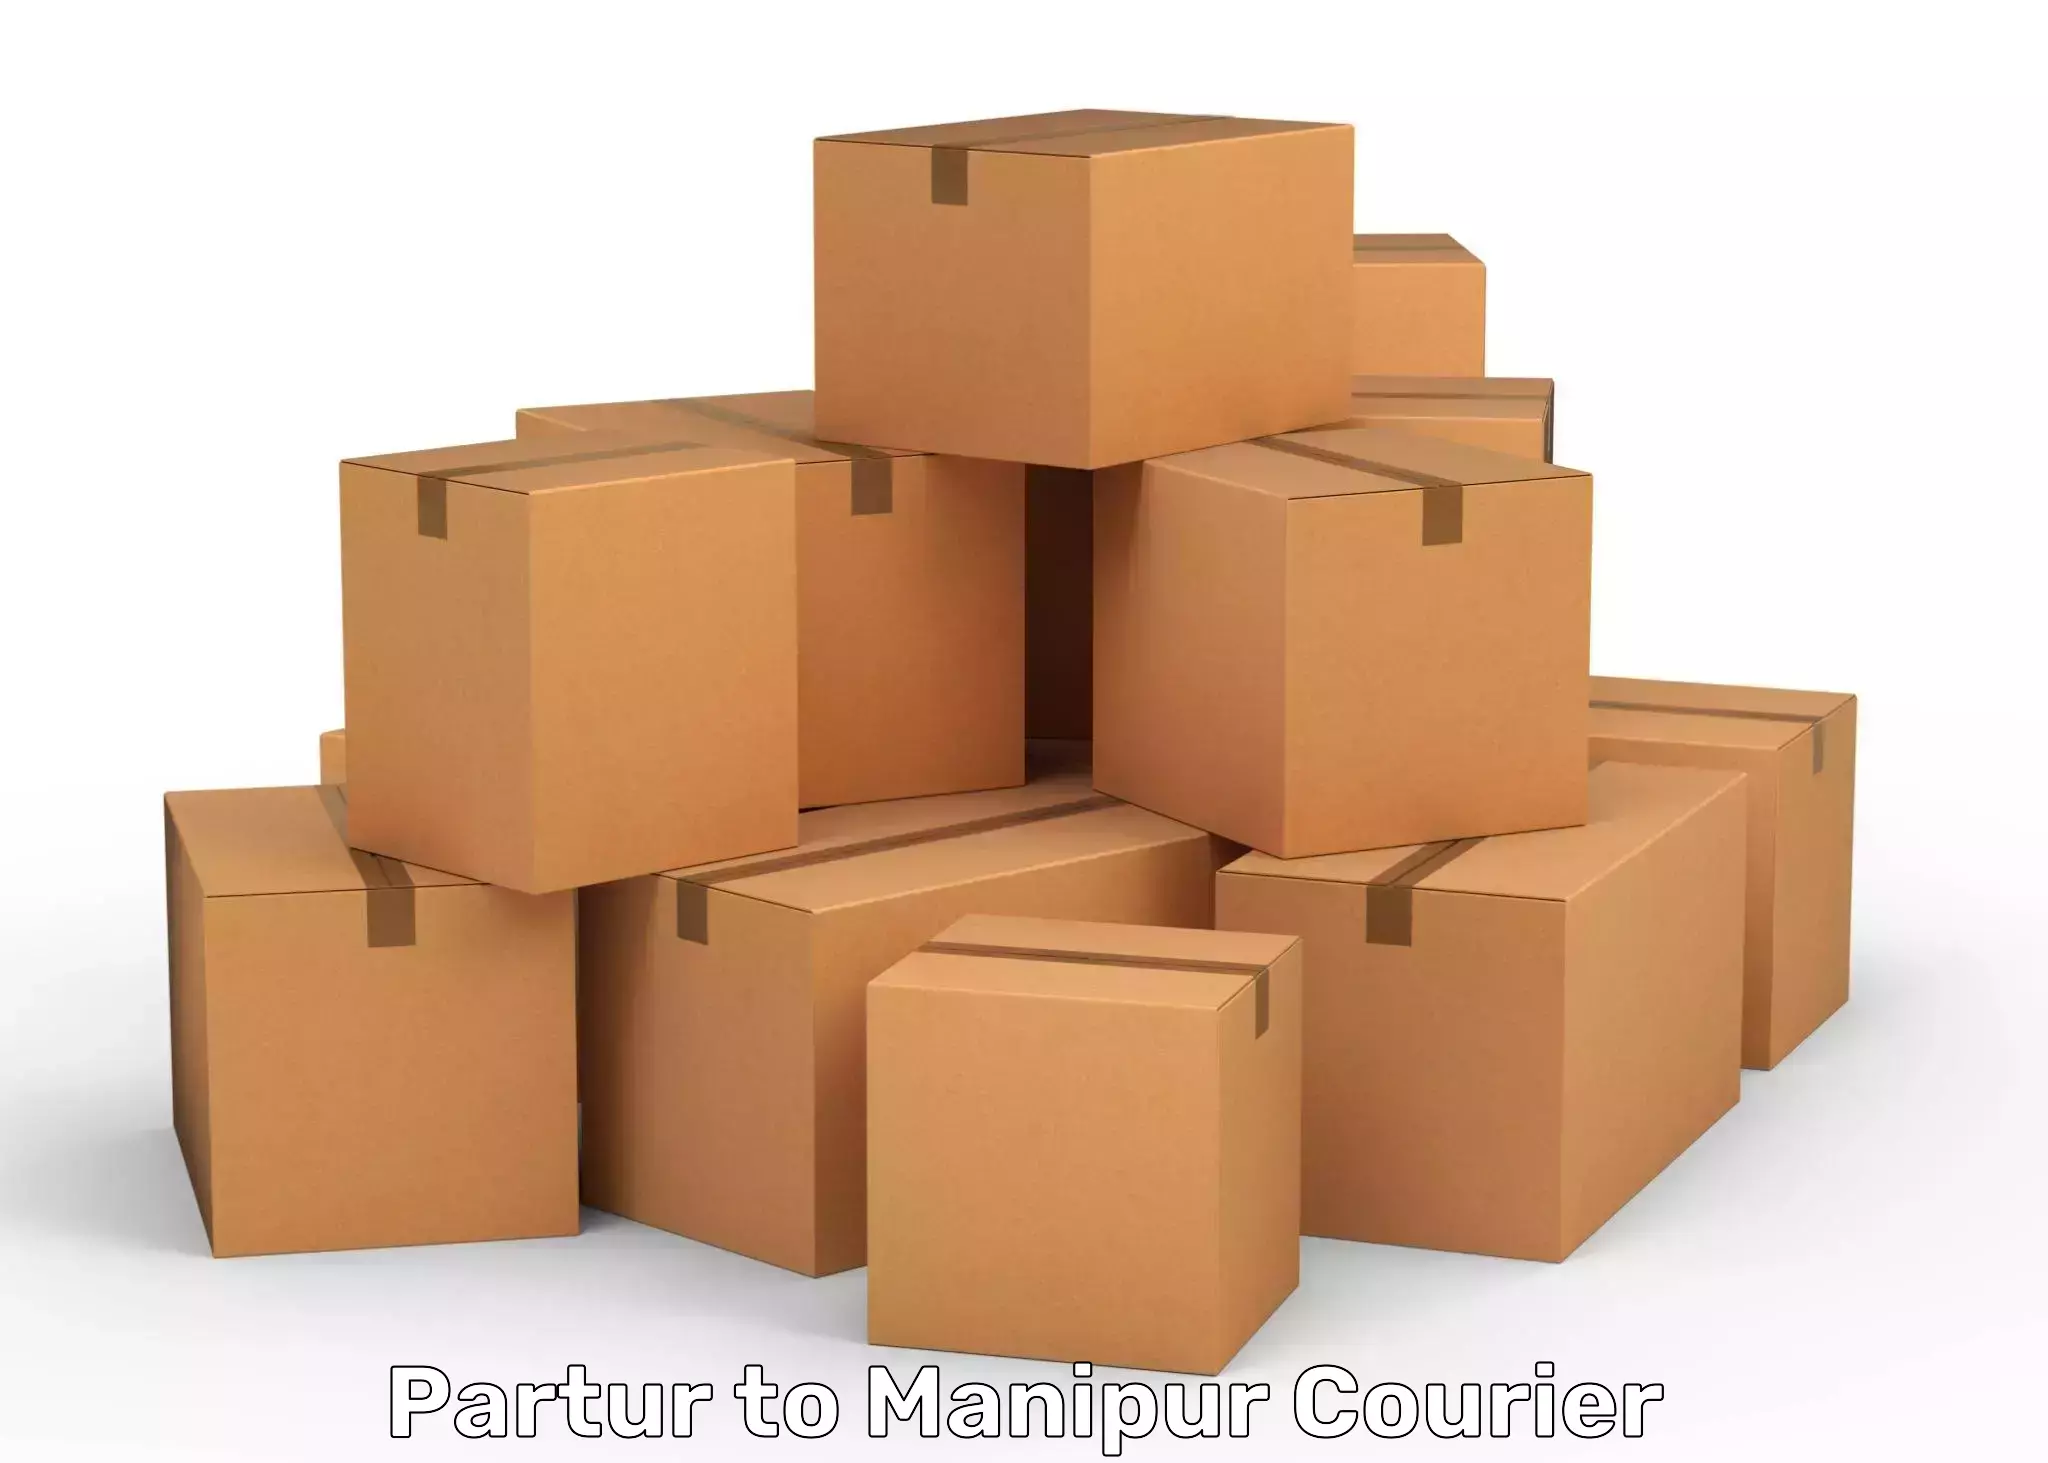 Smart parcel solutions Partur to NIT Manipur